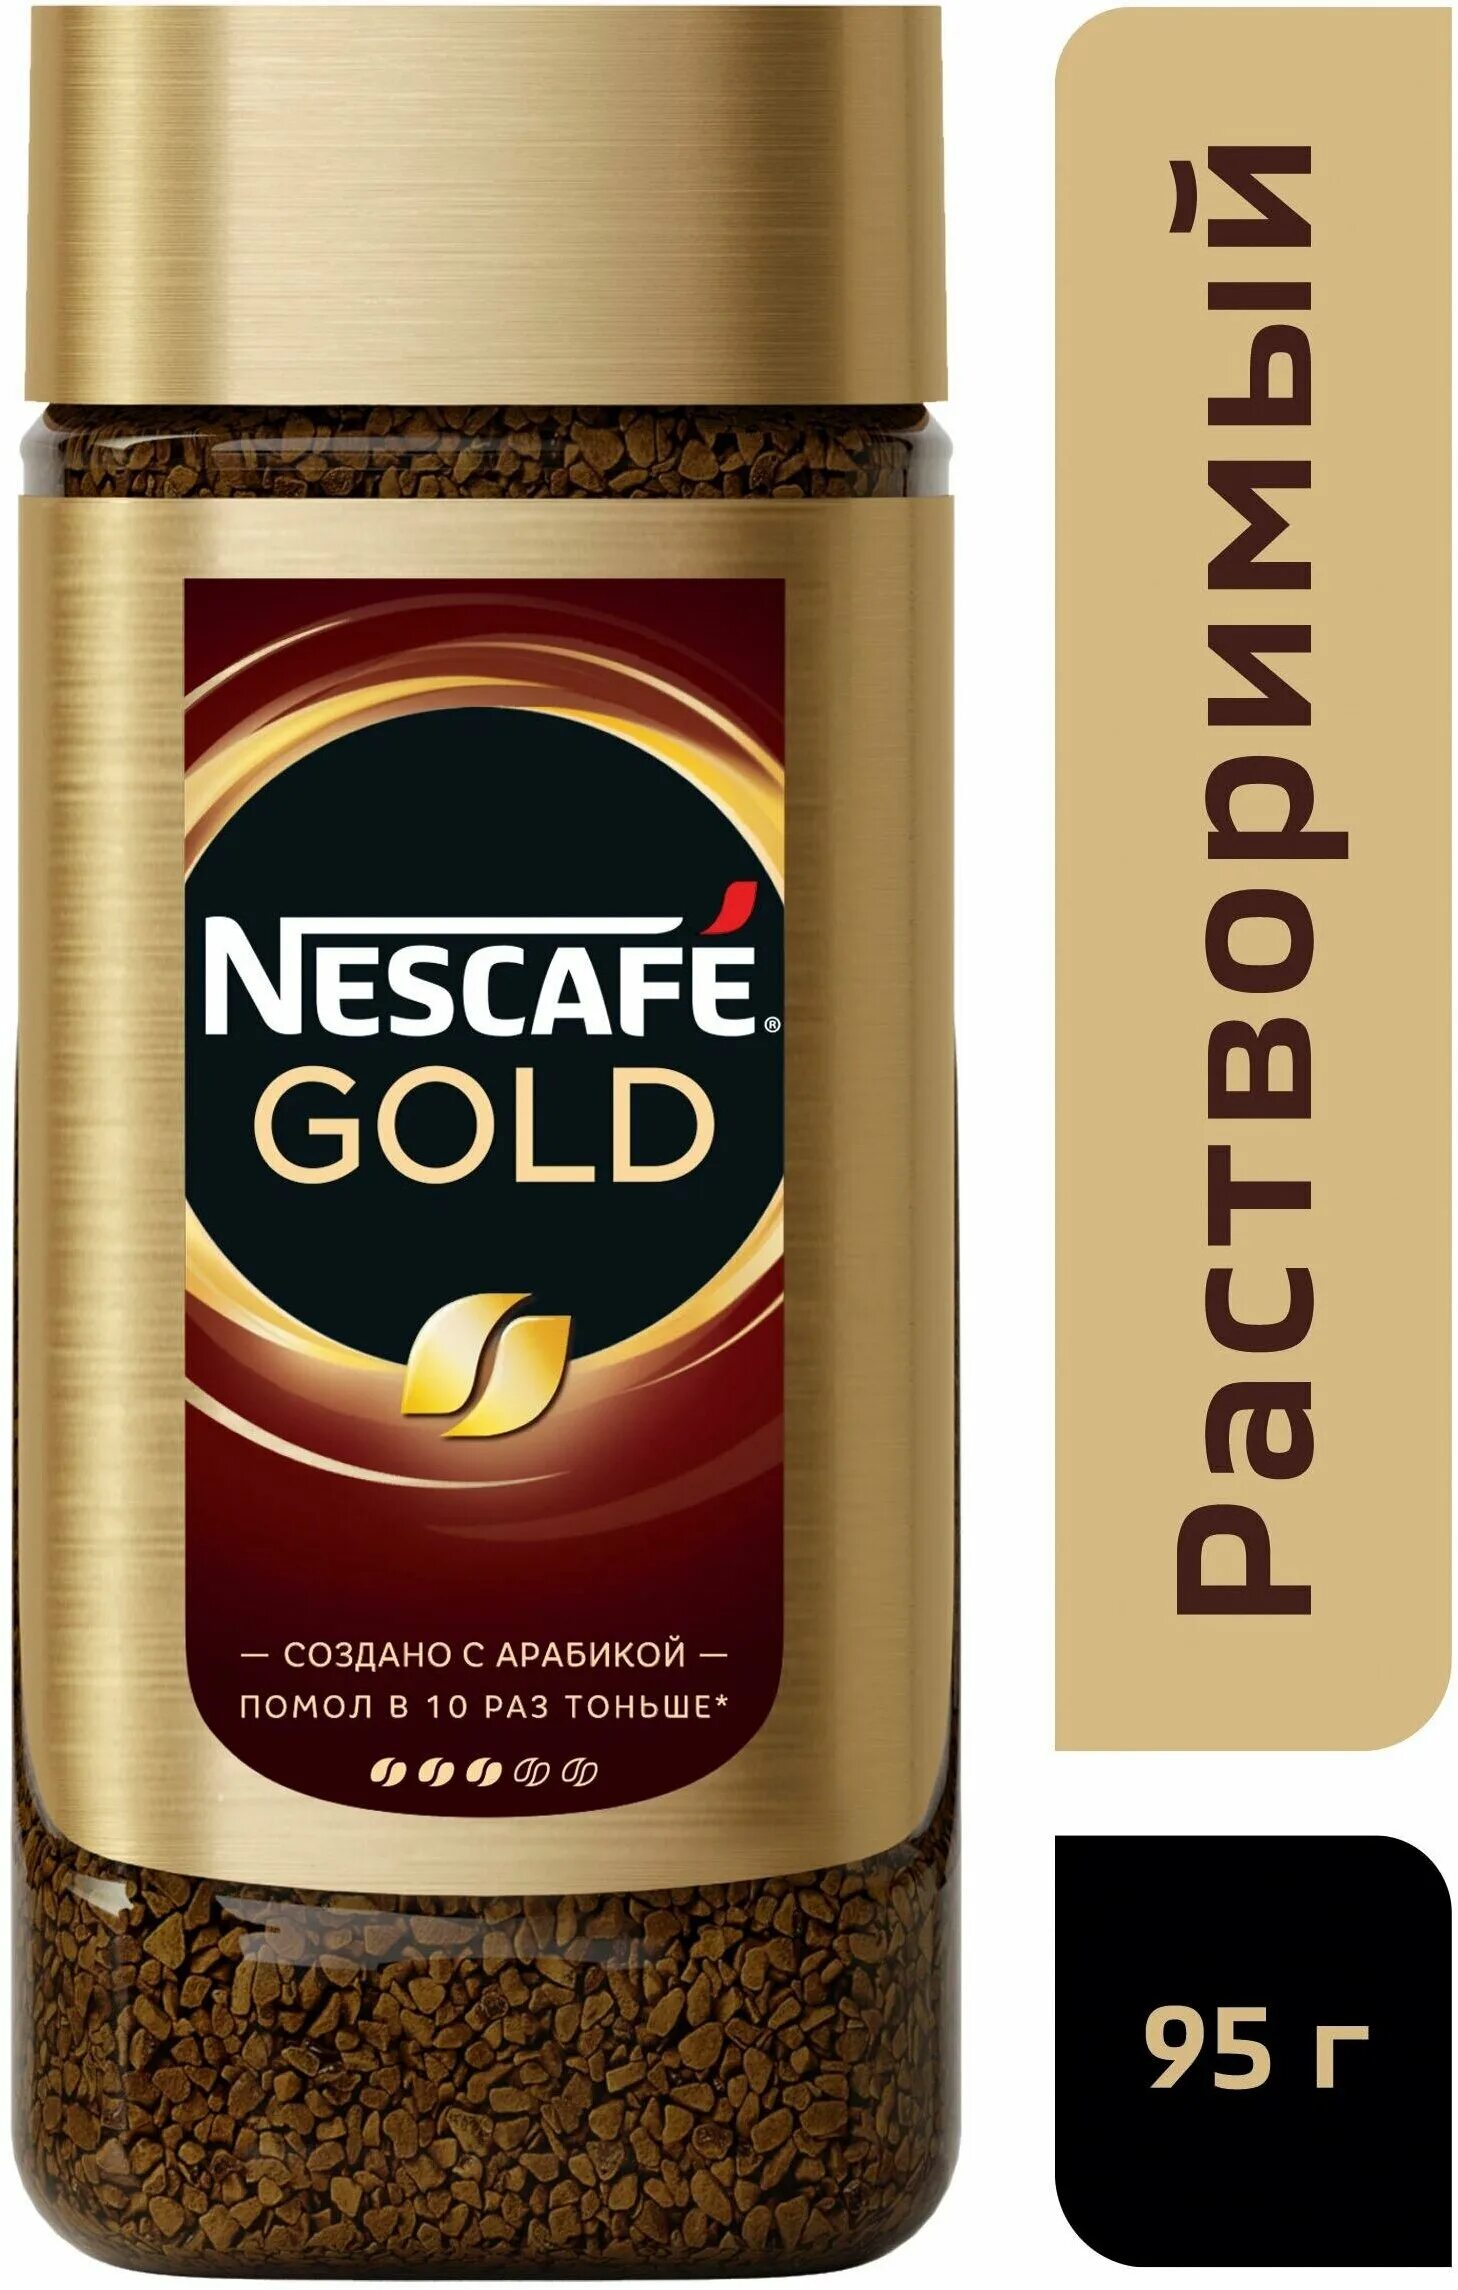 Кофе nescafe gold 190. Кофе растворимый Nescafe Gold, 190г. Нескафе Голд 190 стекло. Nescafe Gold 95. Nescafe Gold сублимированный 95 г.